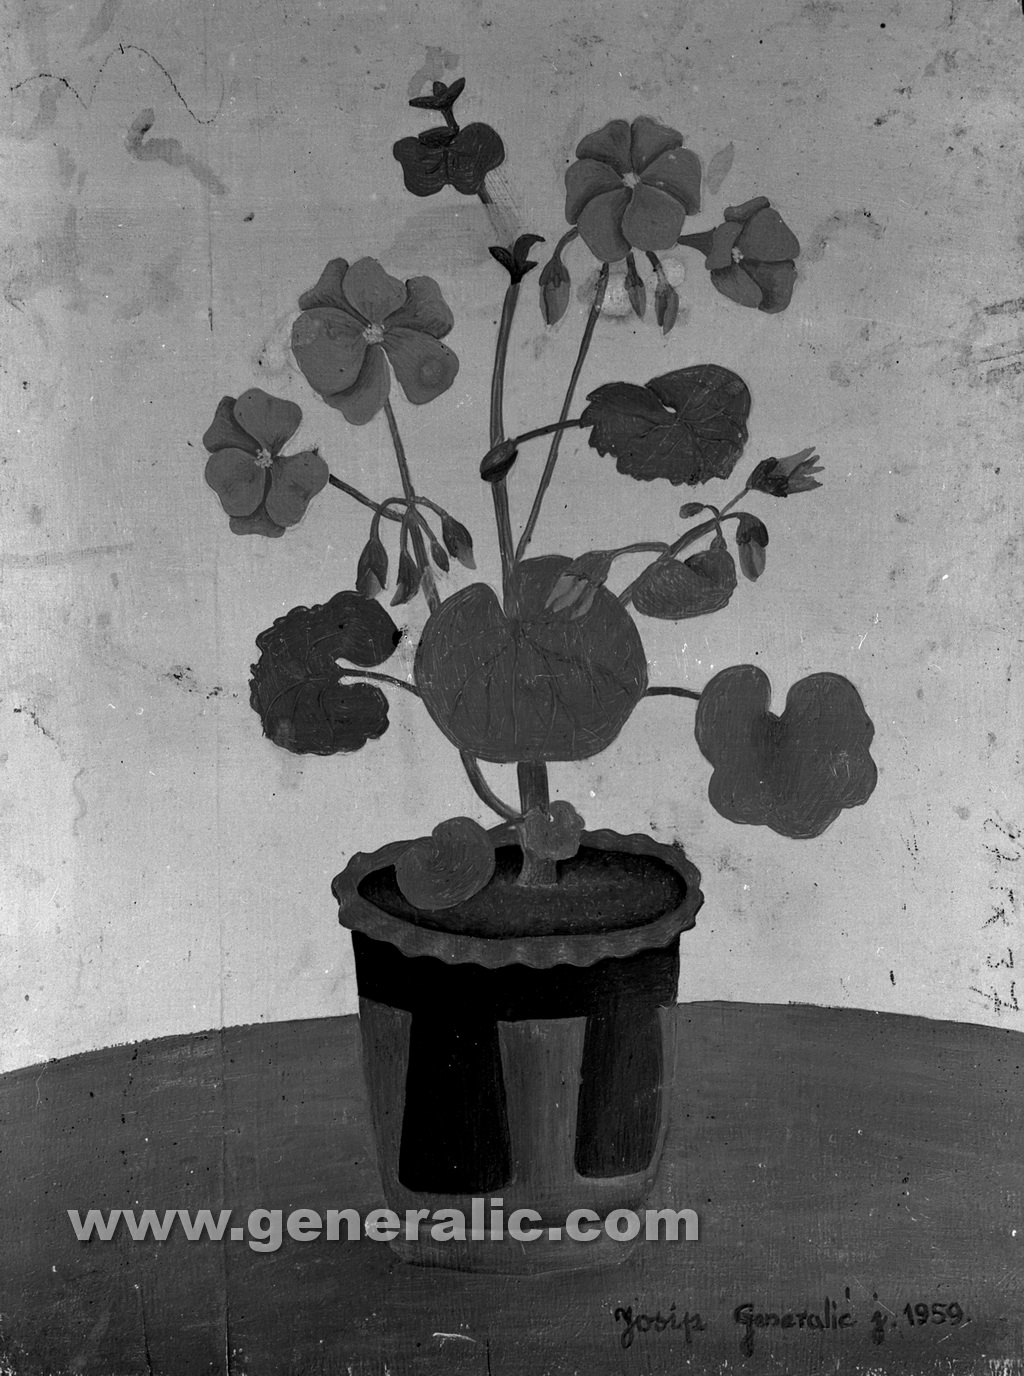 Josip Generalic, 1959, Flowers in a pot, oil on wood